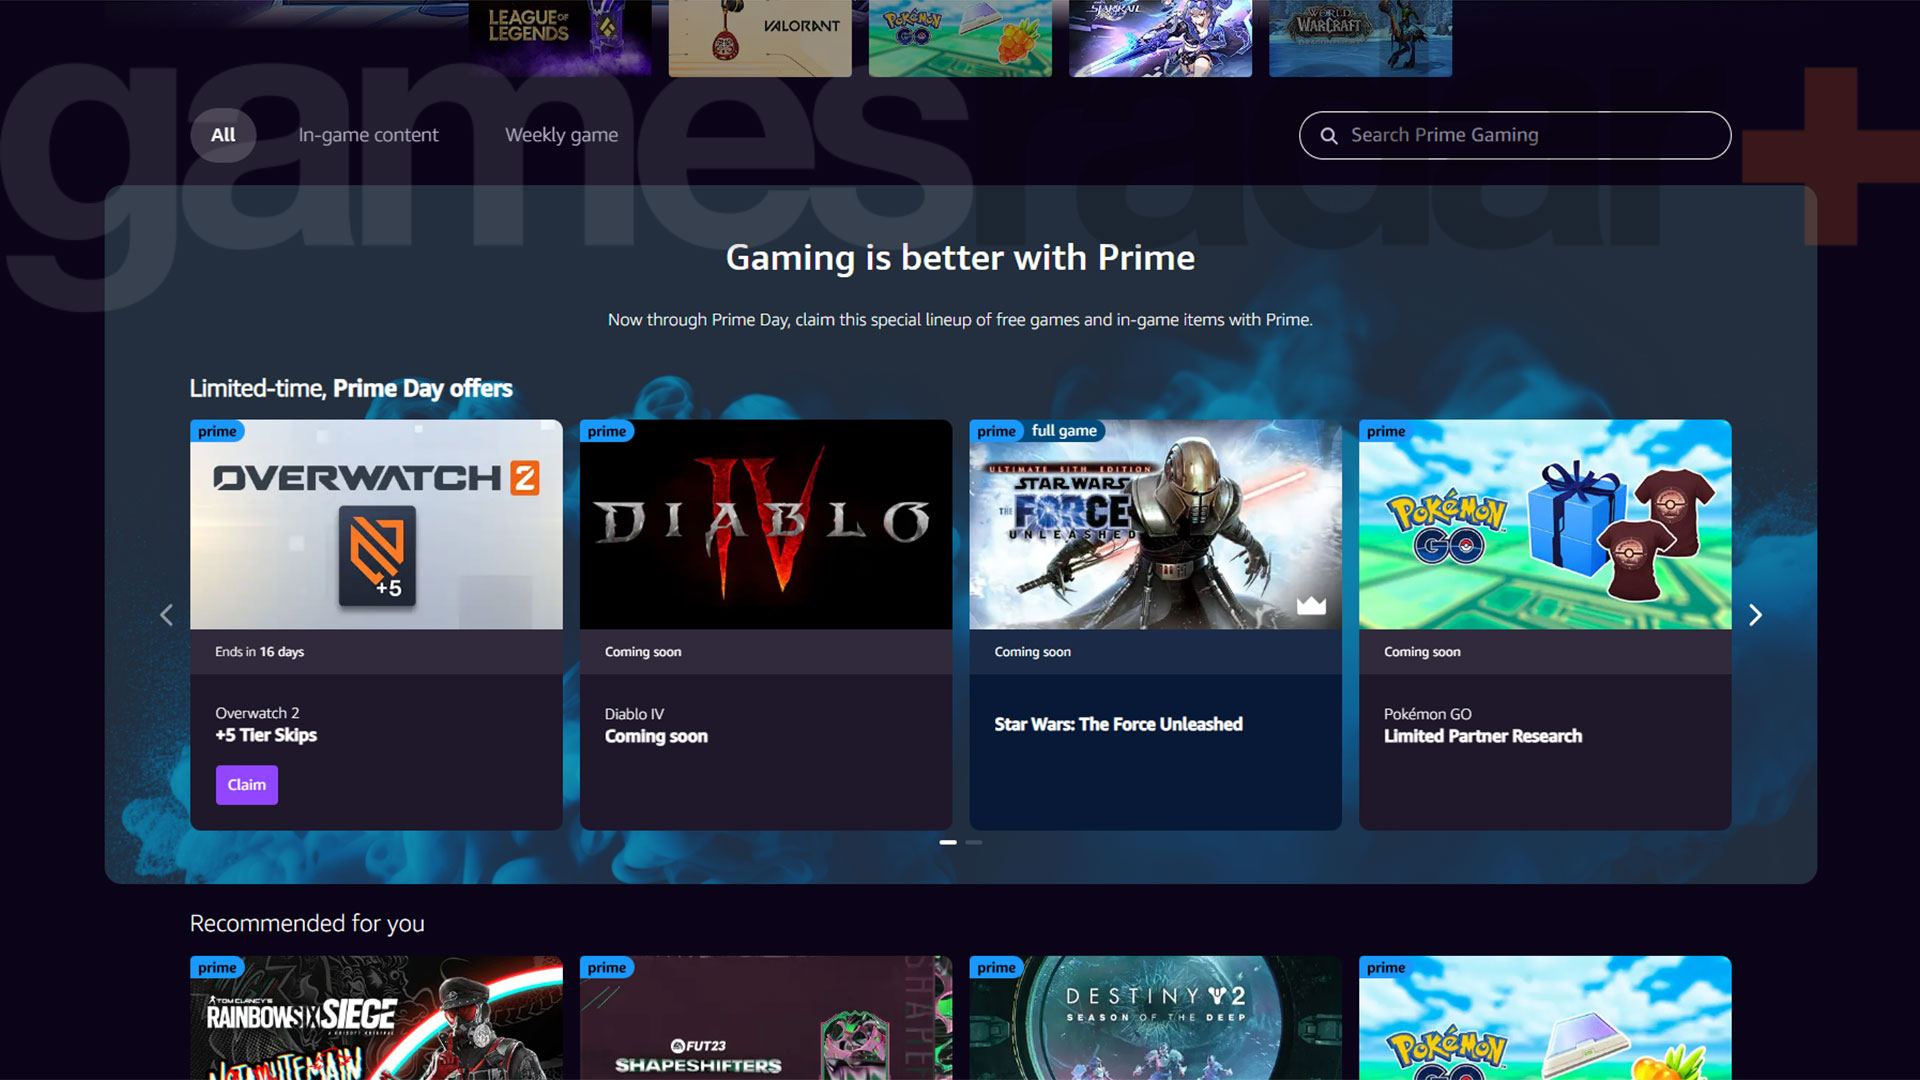 A página inicial do Prime Gaming, que mostra as recompensas do Diablo 4 como Em breve